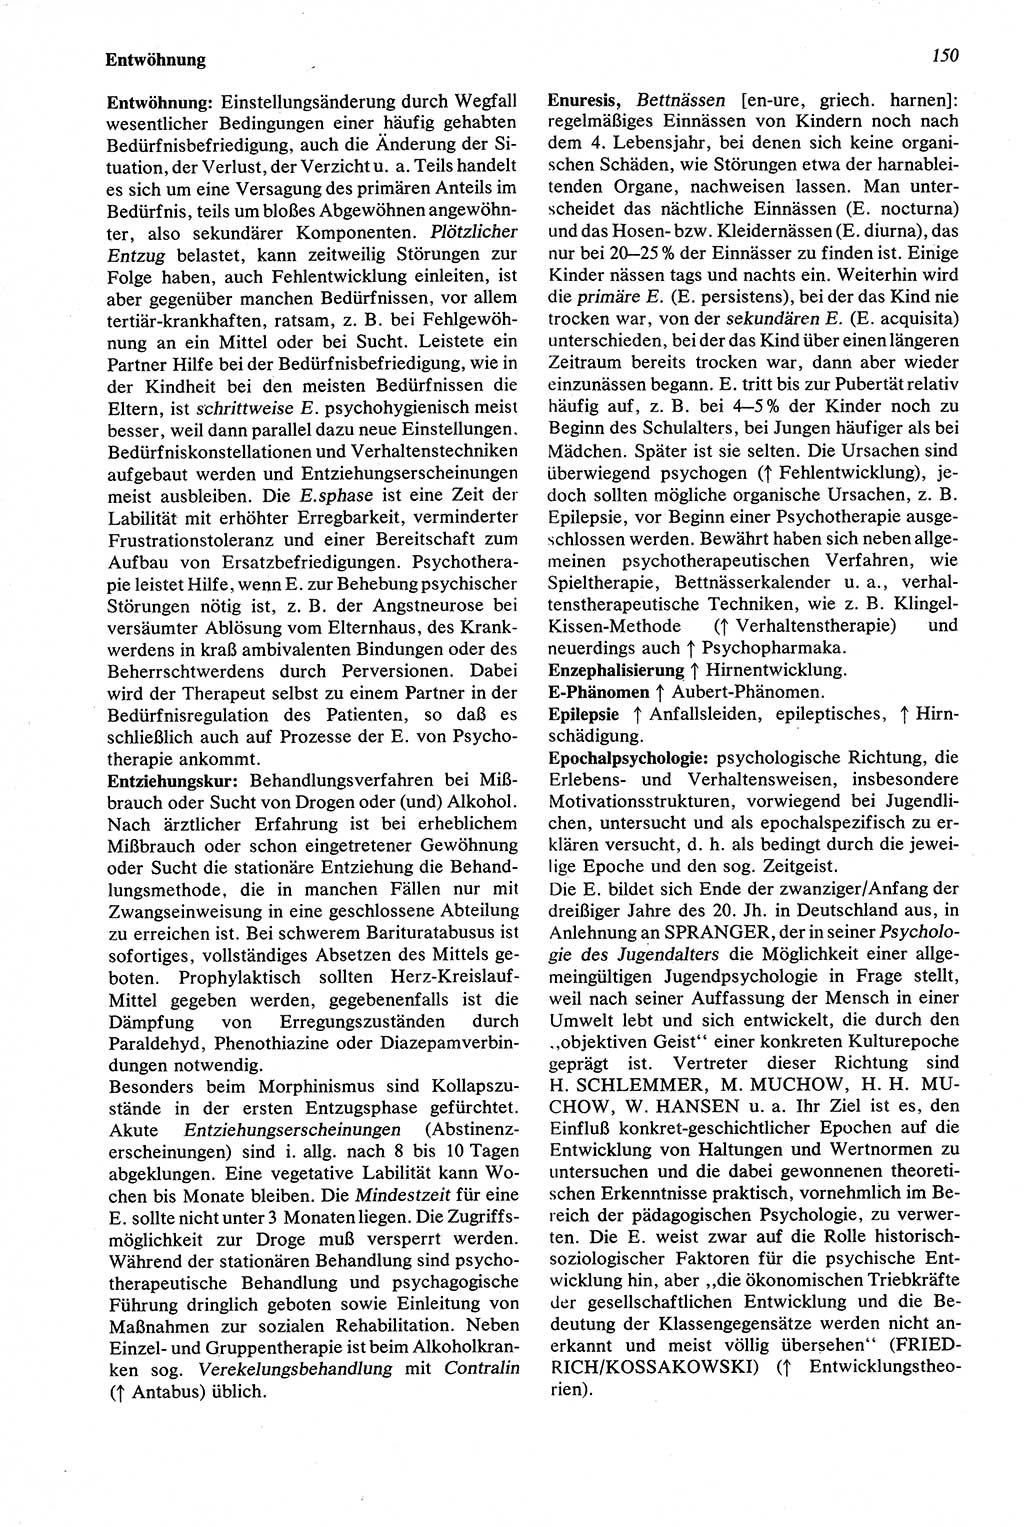 Wörterbuch der Psychologie [Deutsche Demokratische Republik (DDR)] 1976, Seite 150 (Wb. Psych. DDR 1976, S. 150)